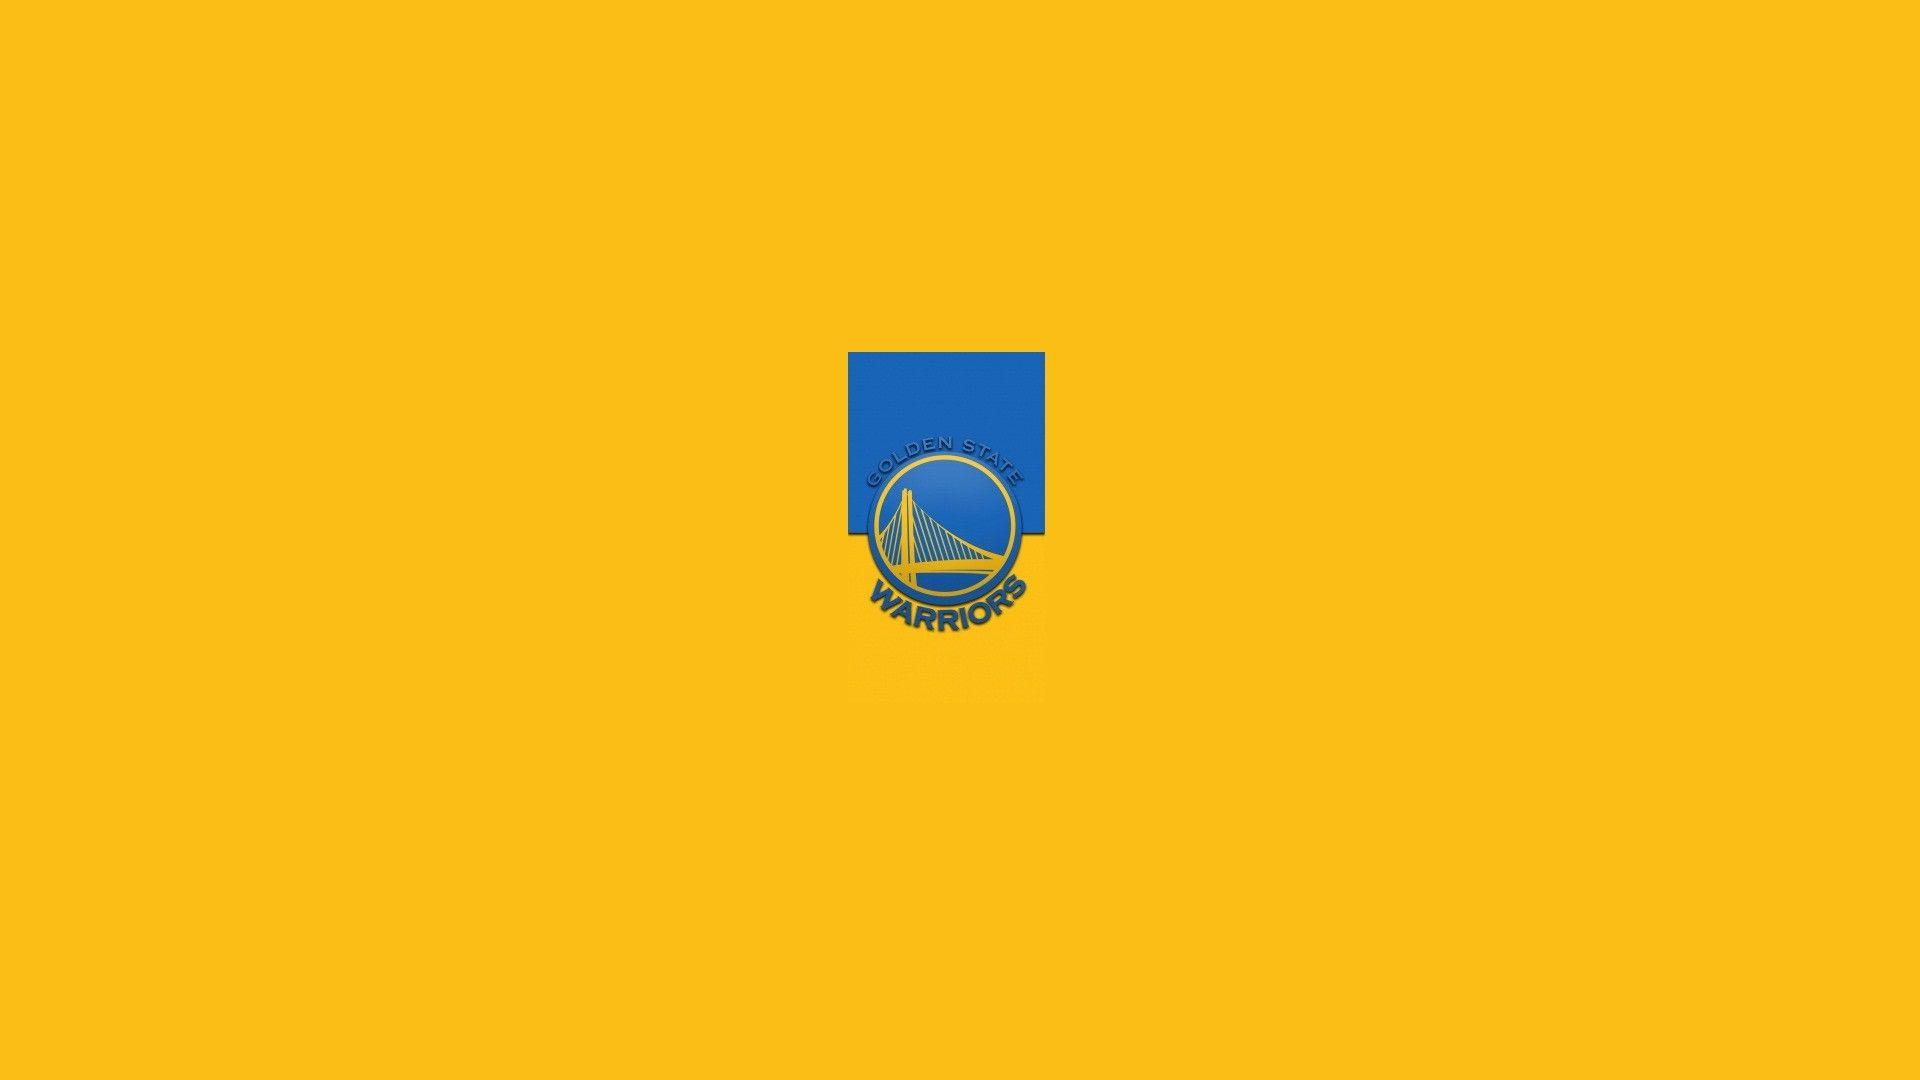 Wallpaper HD Golden State Warriors Logo Basketball Wallpaper